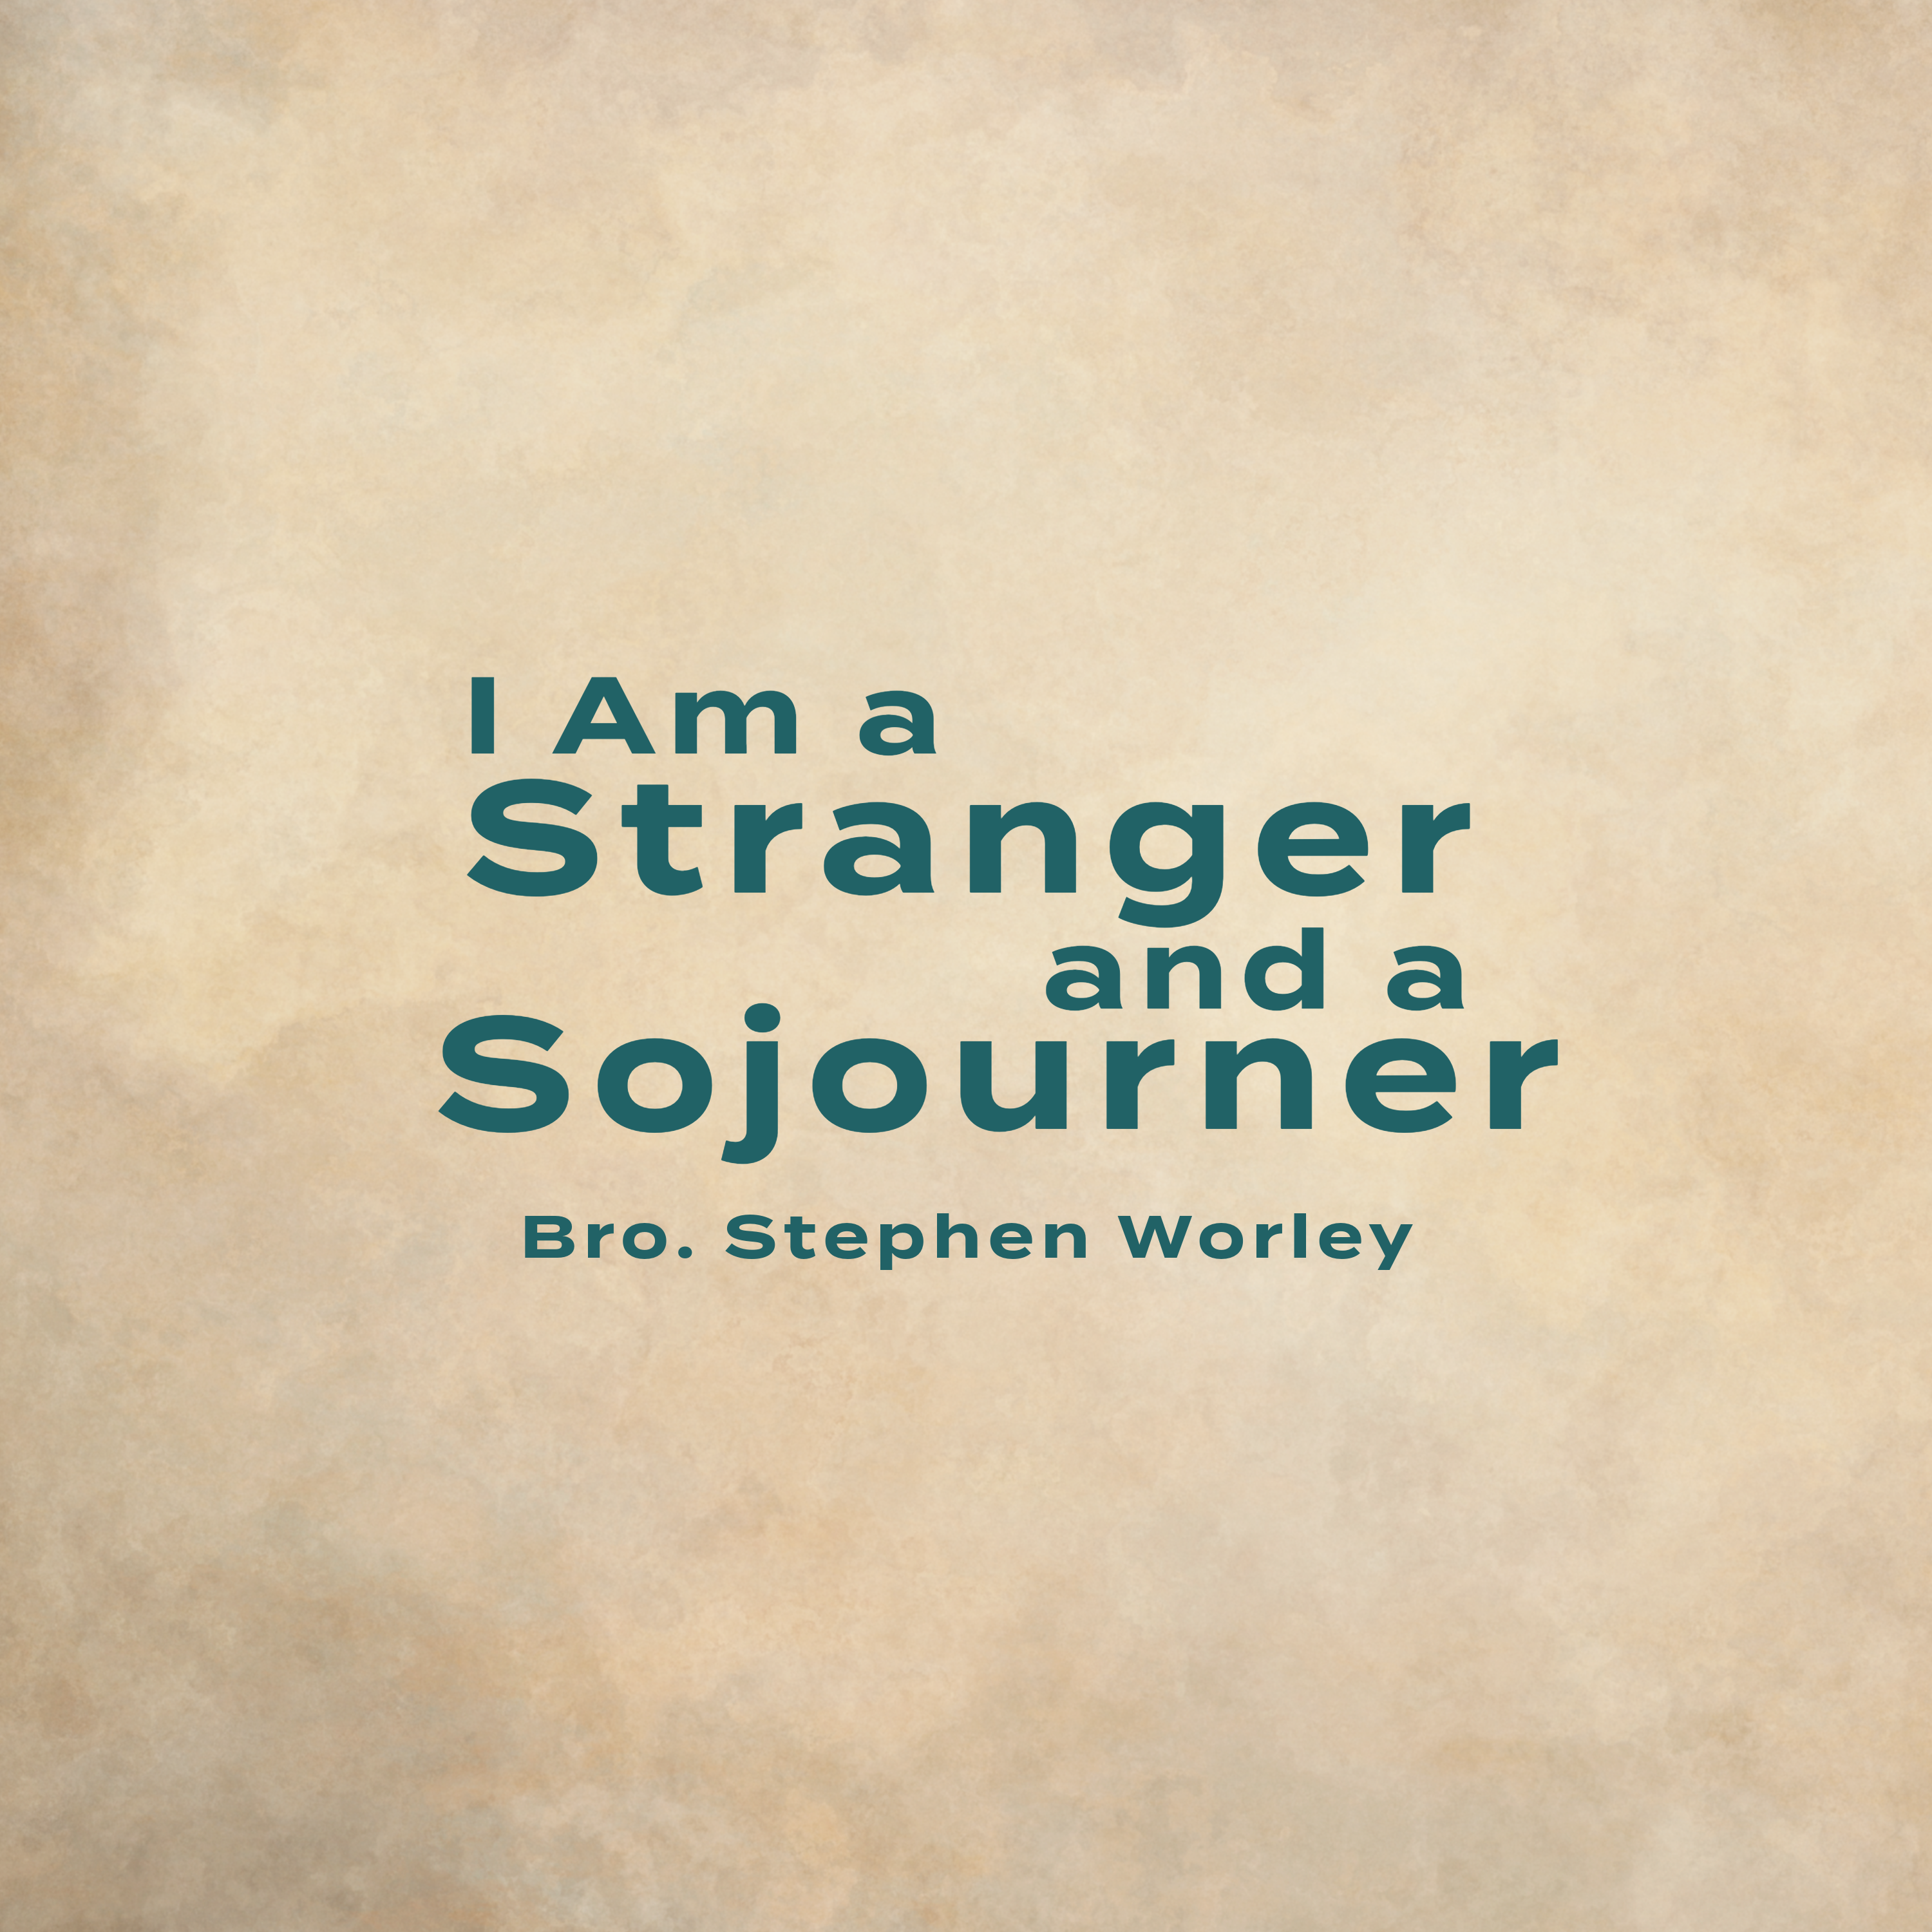 I Am a Stranger and a Sojourner